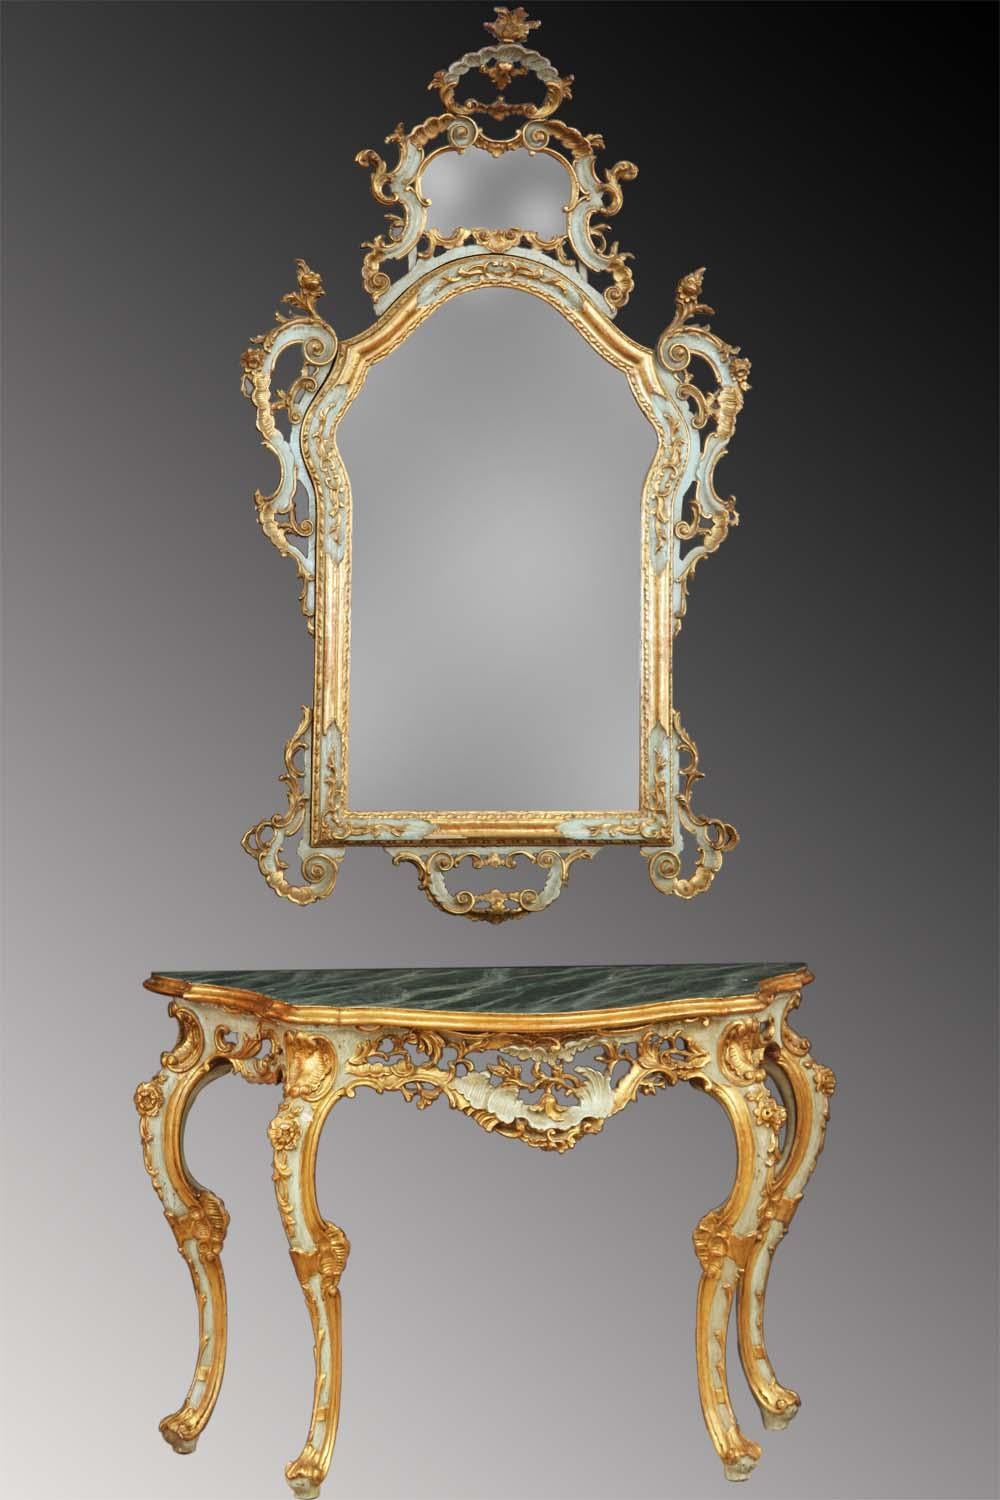 Spiegel-Konsolentisch im Stil Louis XV Rokoko, geschnitzt, lackiert und vergoldet. Venezianische Provenienz.

Zeitraum: Ende des 19. Jahrhunderts 
Obwohl es sich um eine Reproduktion aus dem 19. Jahrhundert handelt, sind die Qualität der